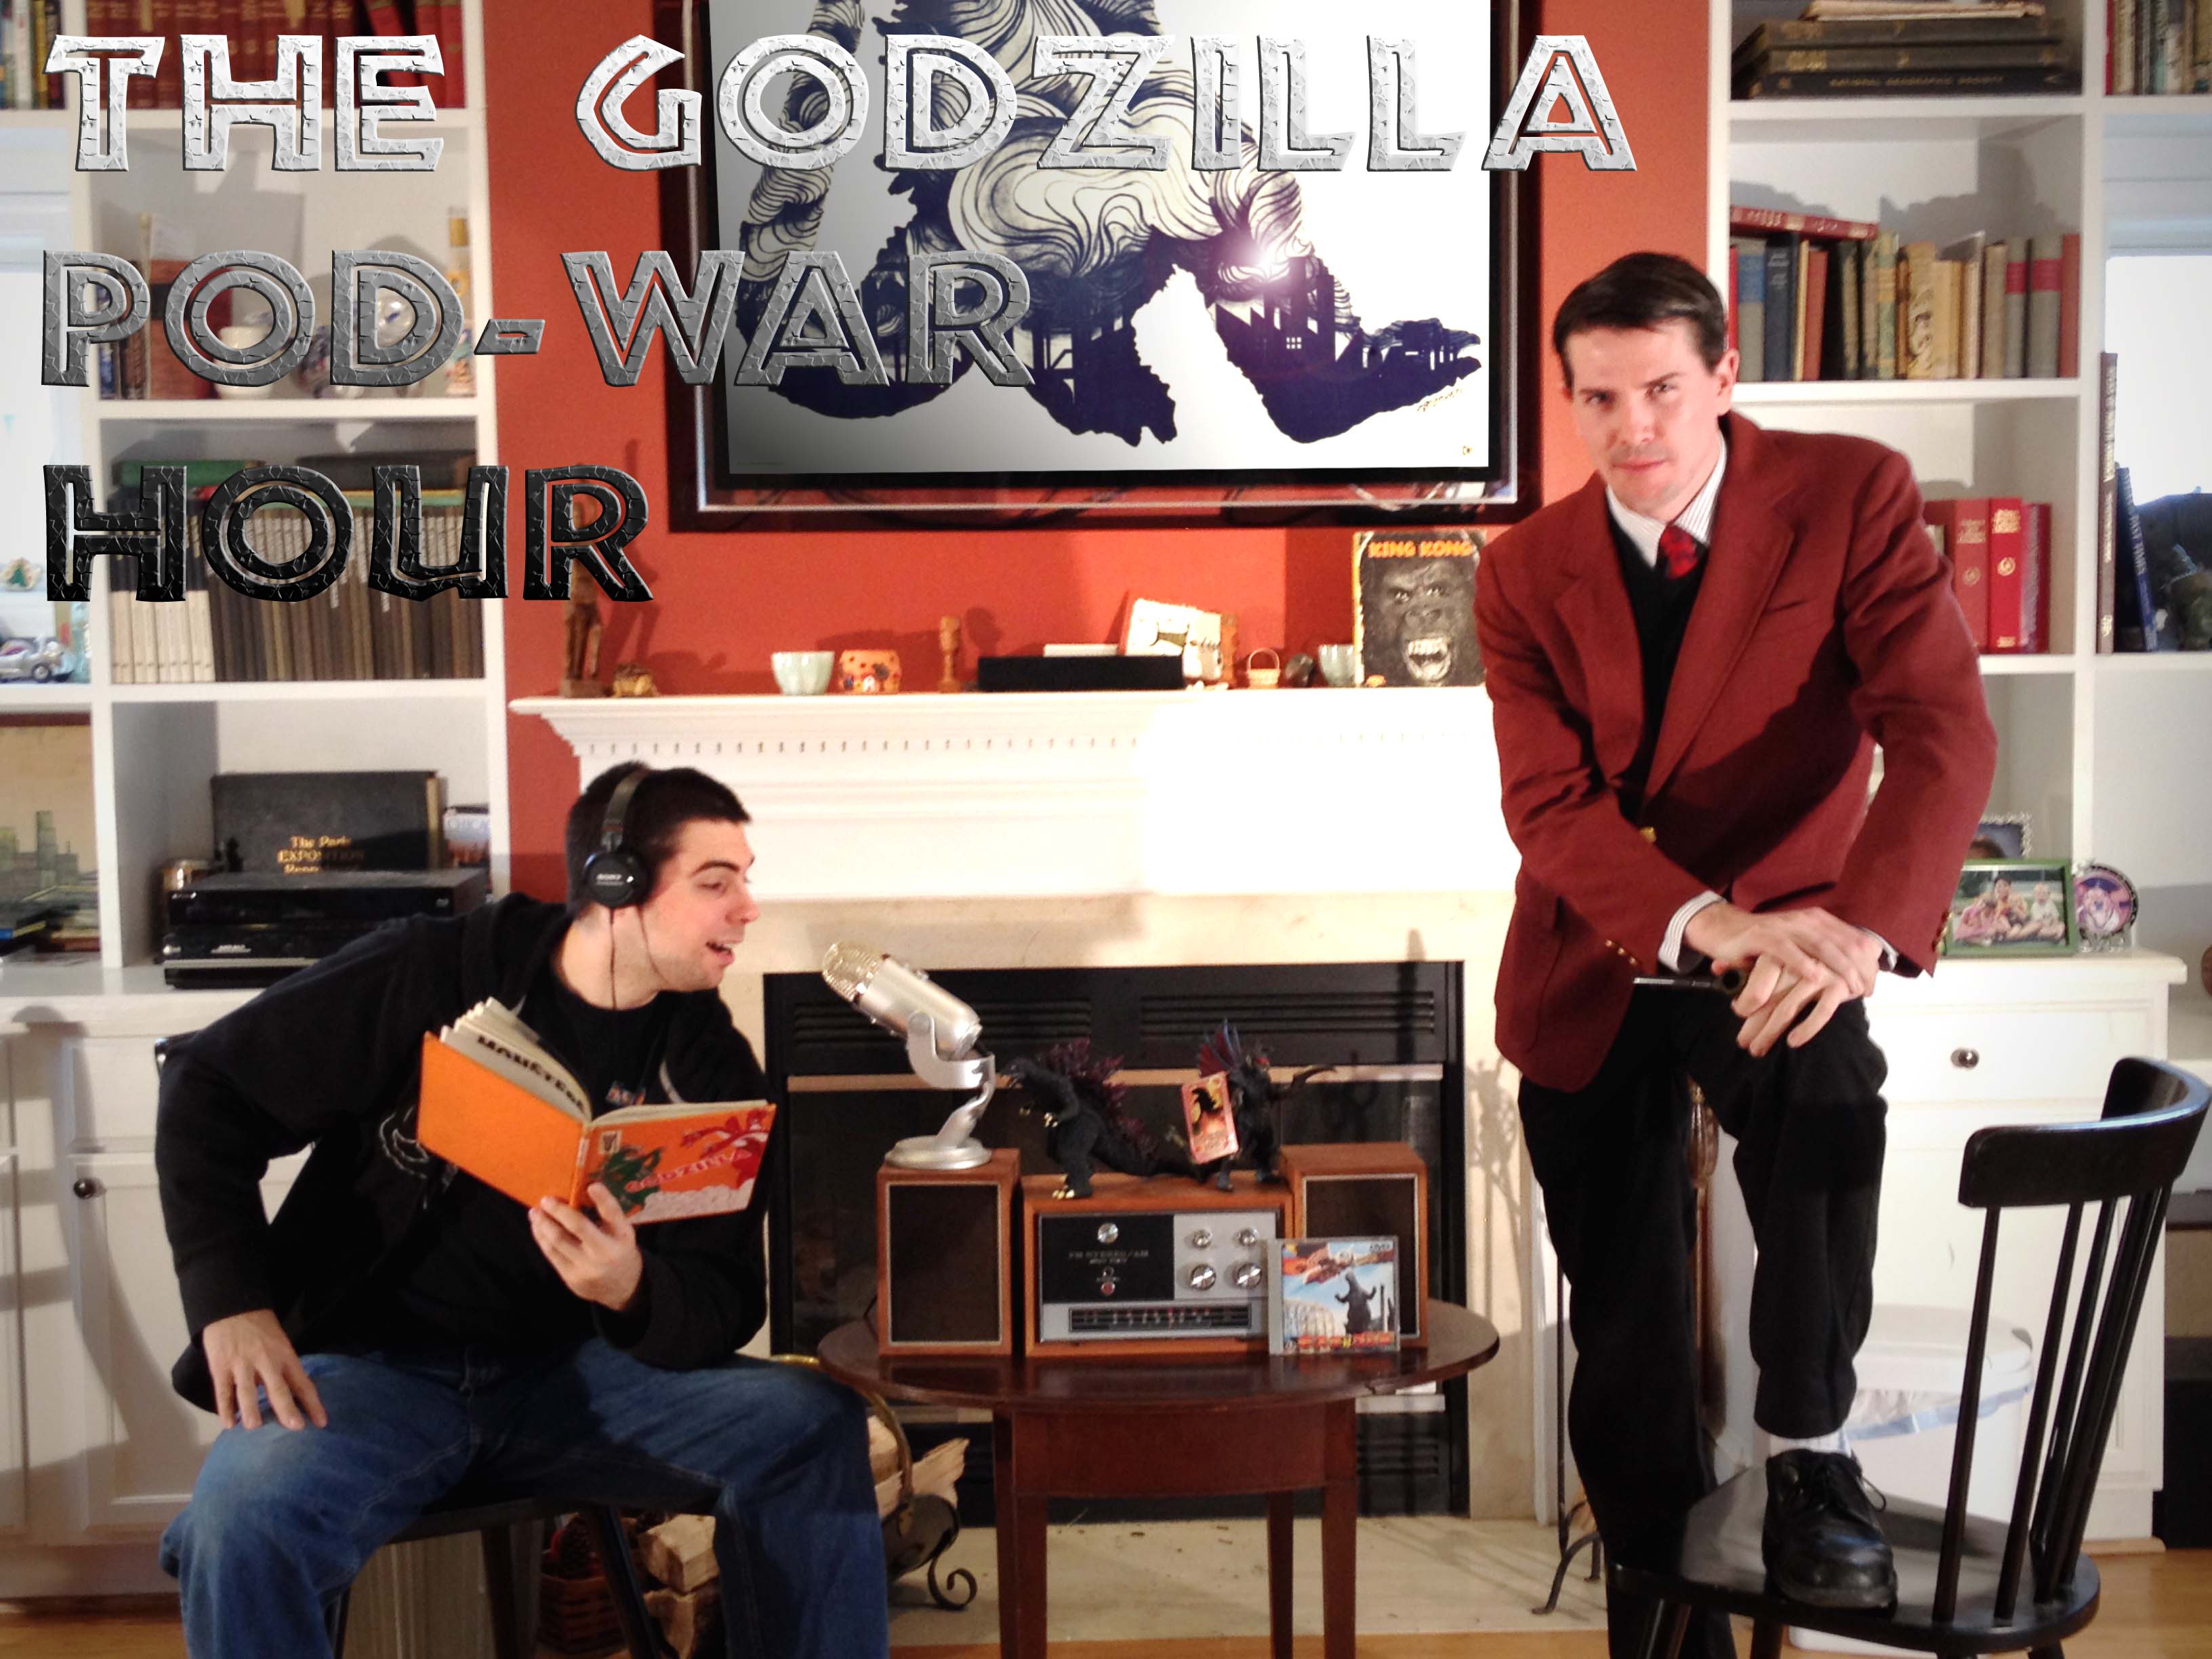 The Godzilla Pod-War Hour